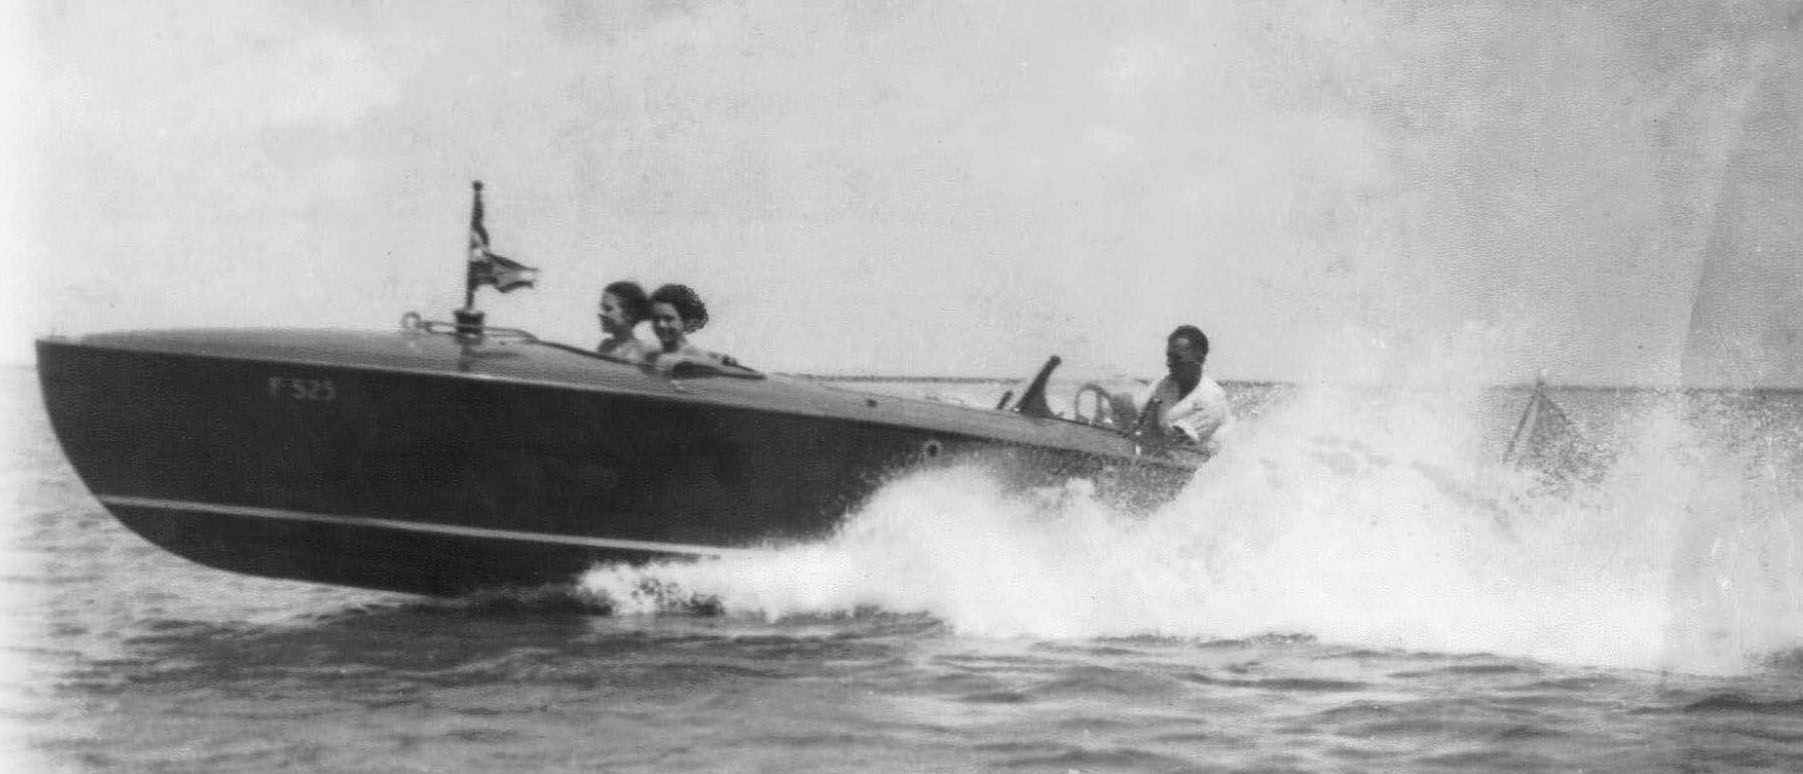 1928 speedboat in the water